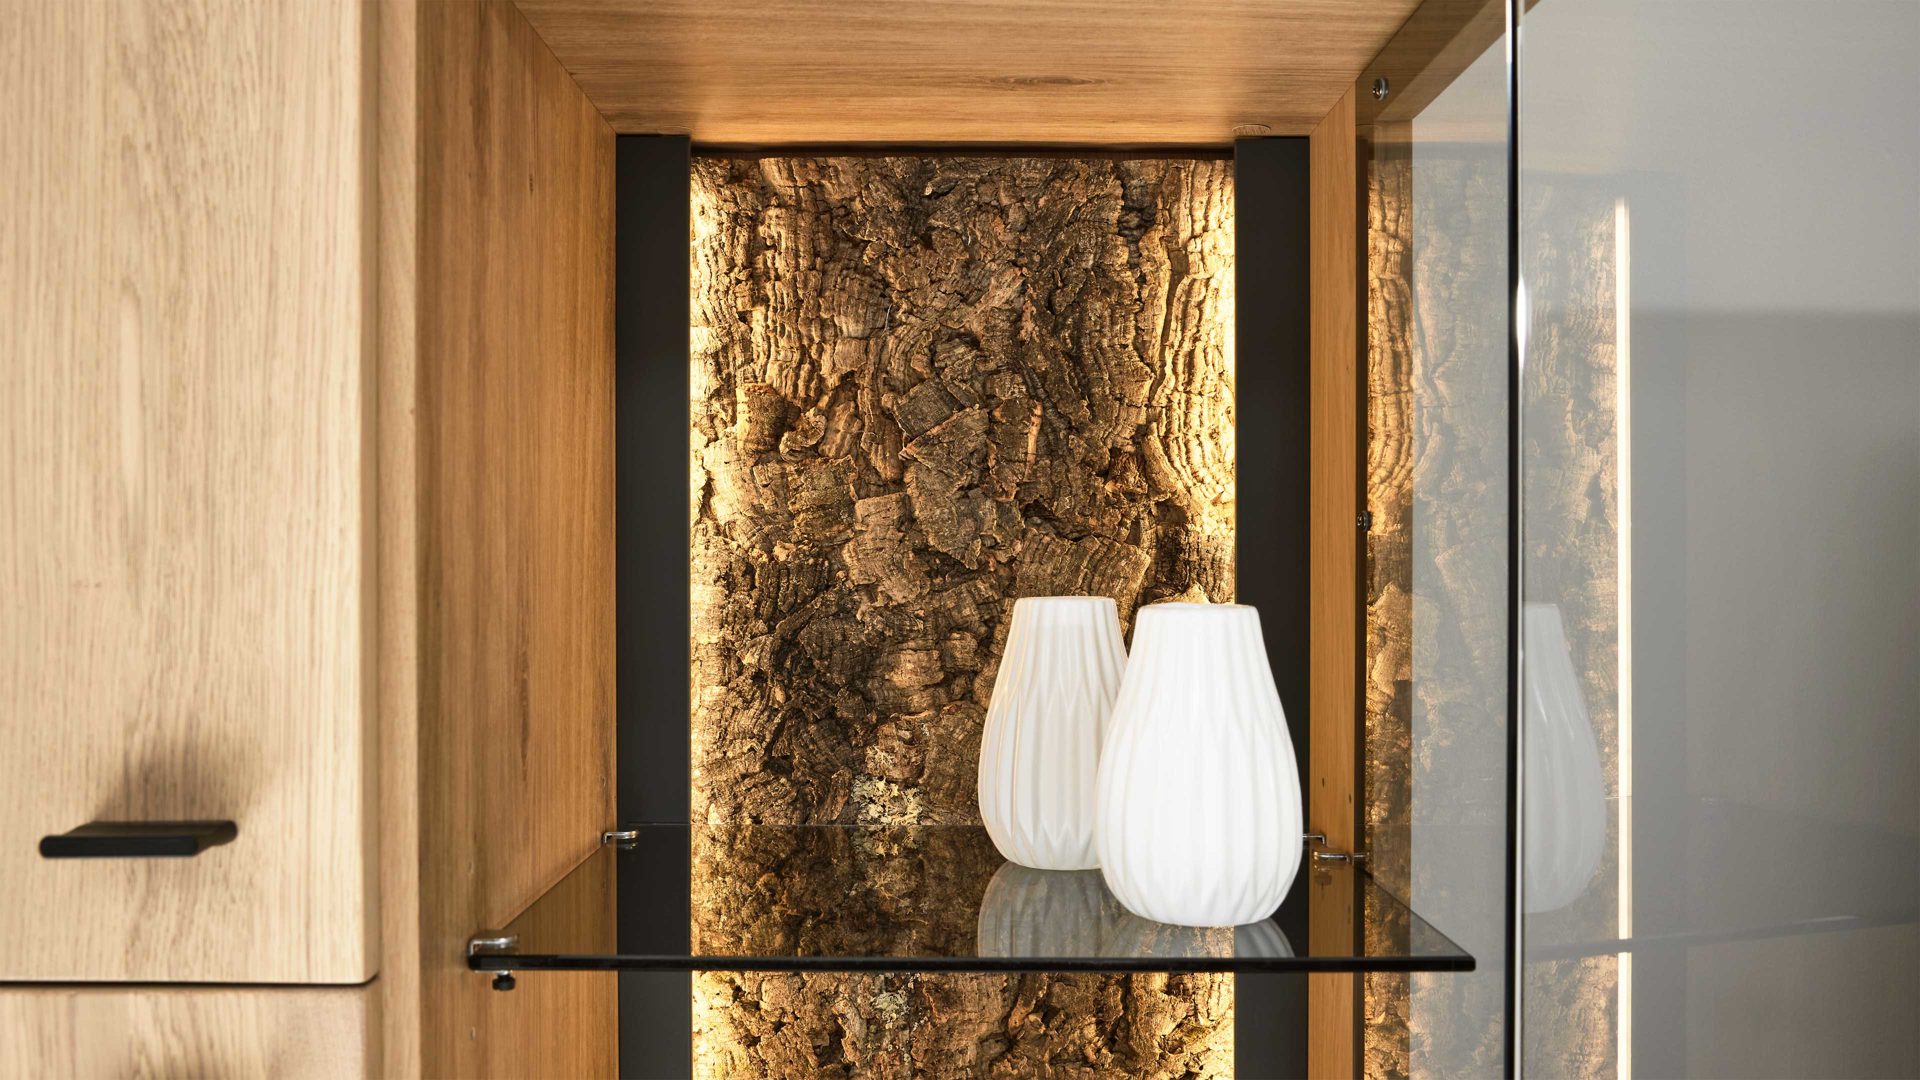 Möbelbeleuchtung Interliving aus Kunststoff in Weiß Interliving Wohnzimmer Serie 2025 - LED-Profilbeleuchtungs-Set vierteilig